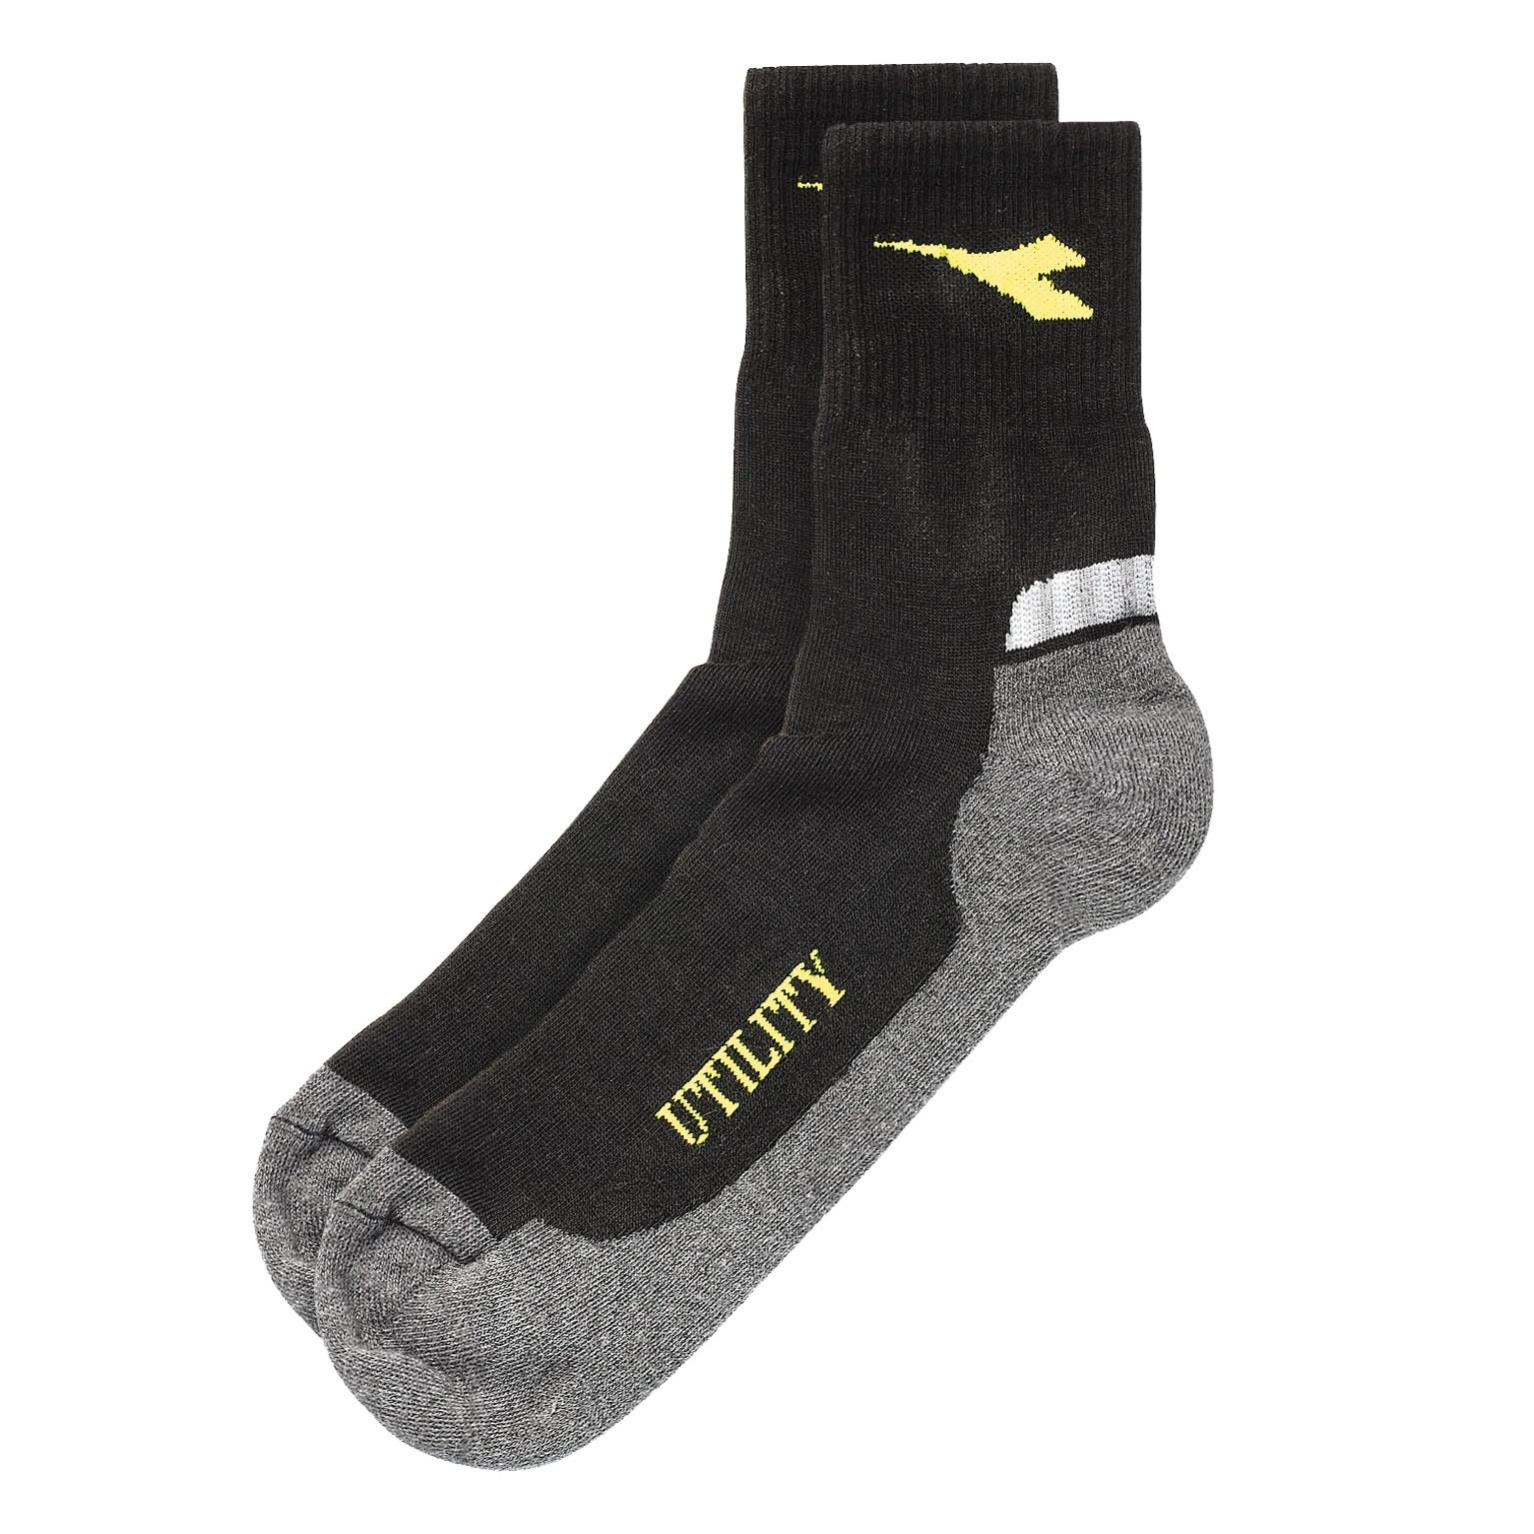 Купить рабочие носки. Носки Diadora. Носки Диадора мужские. Носки пара Diadora. Diadora Unisex Socks Multisport.